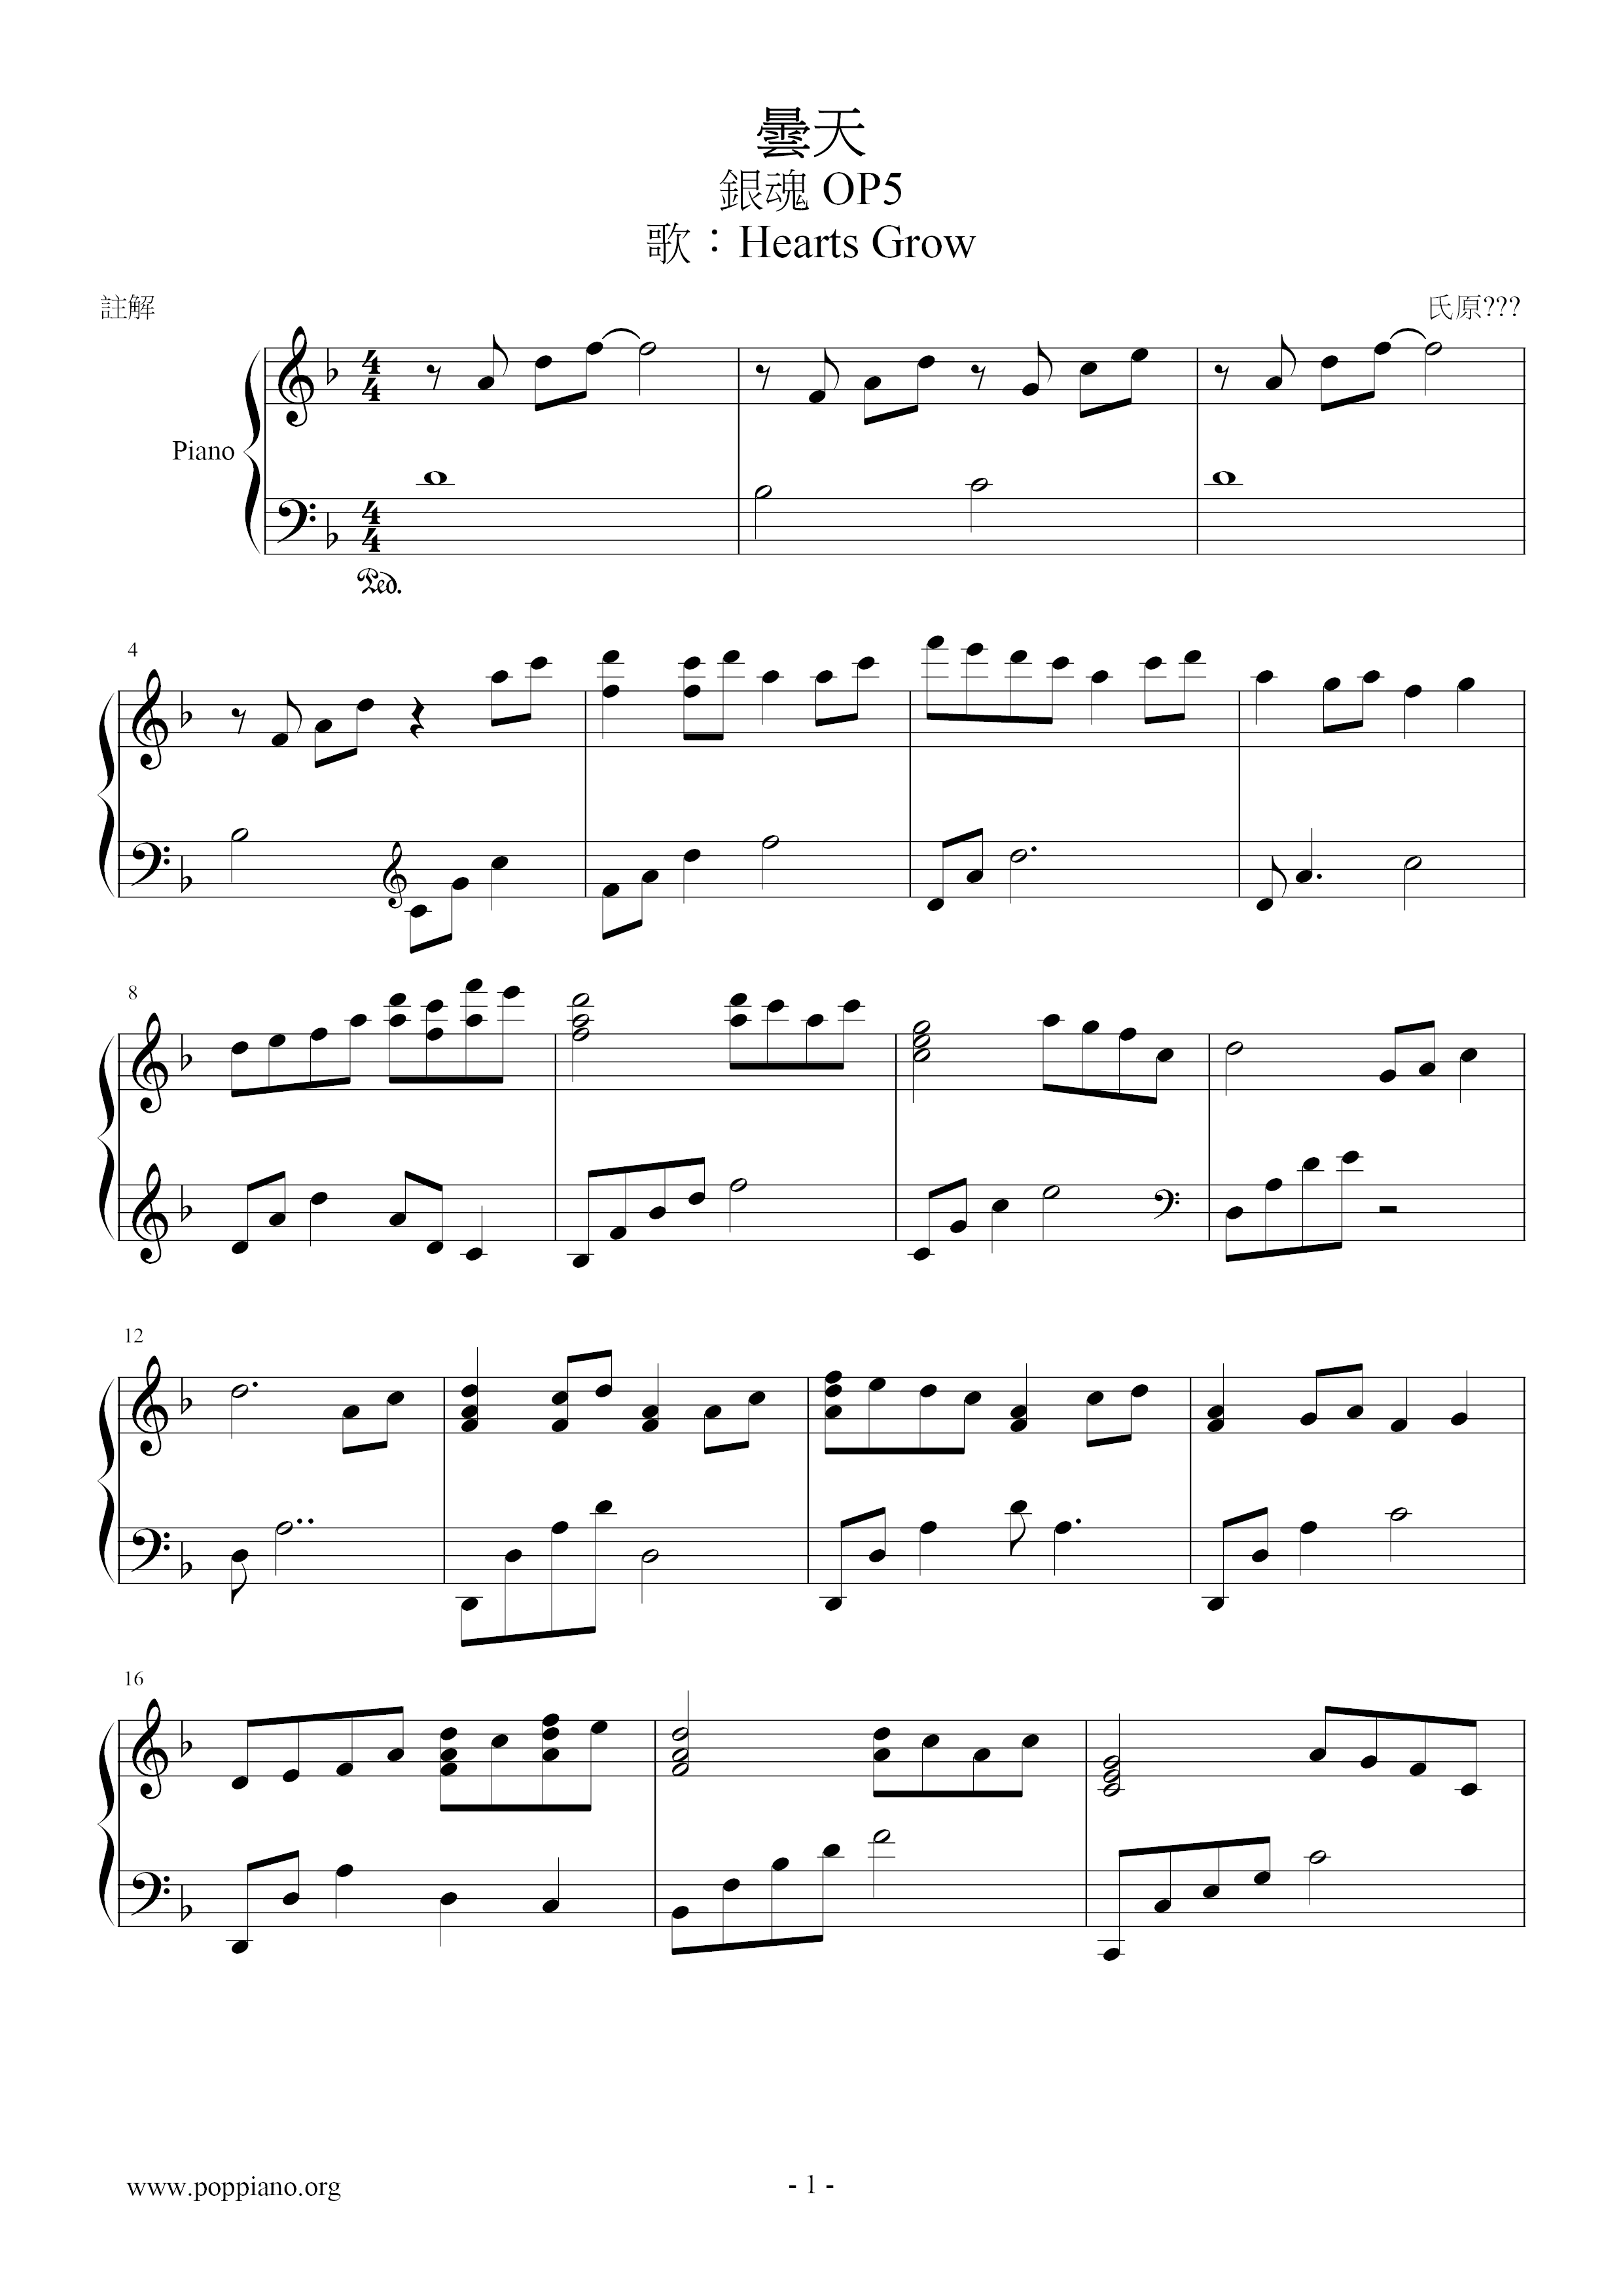  ( Op5) Score